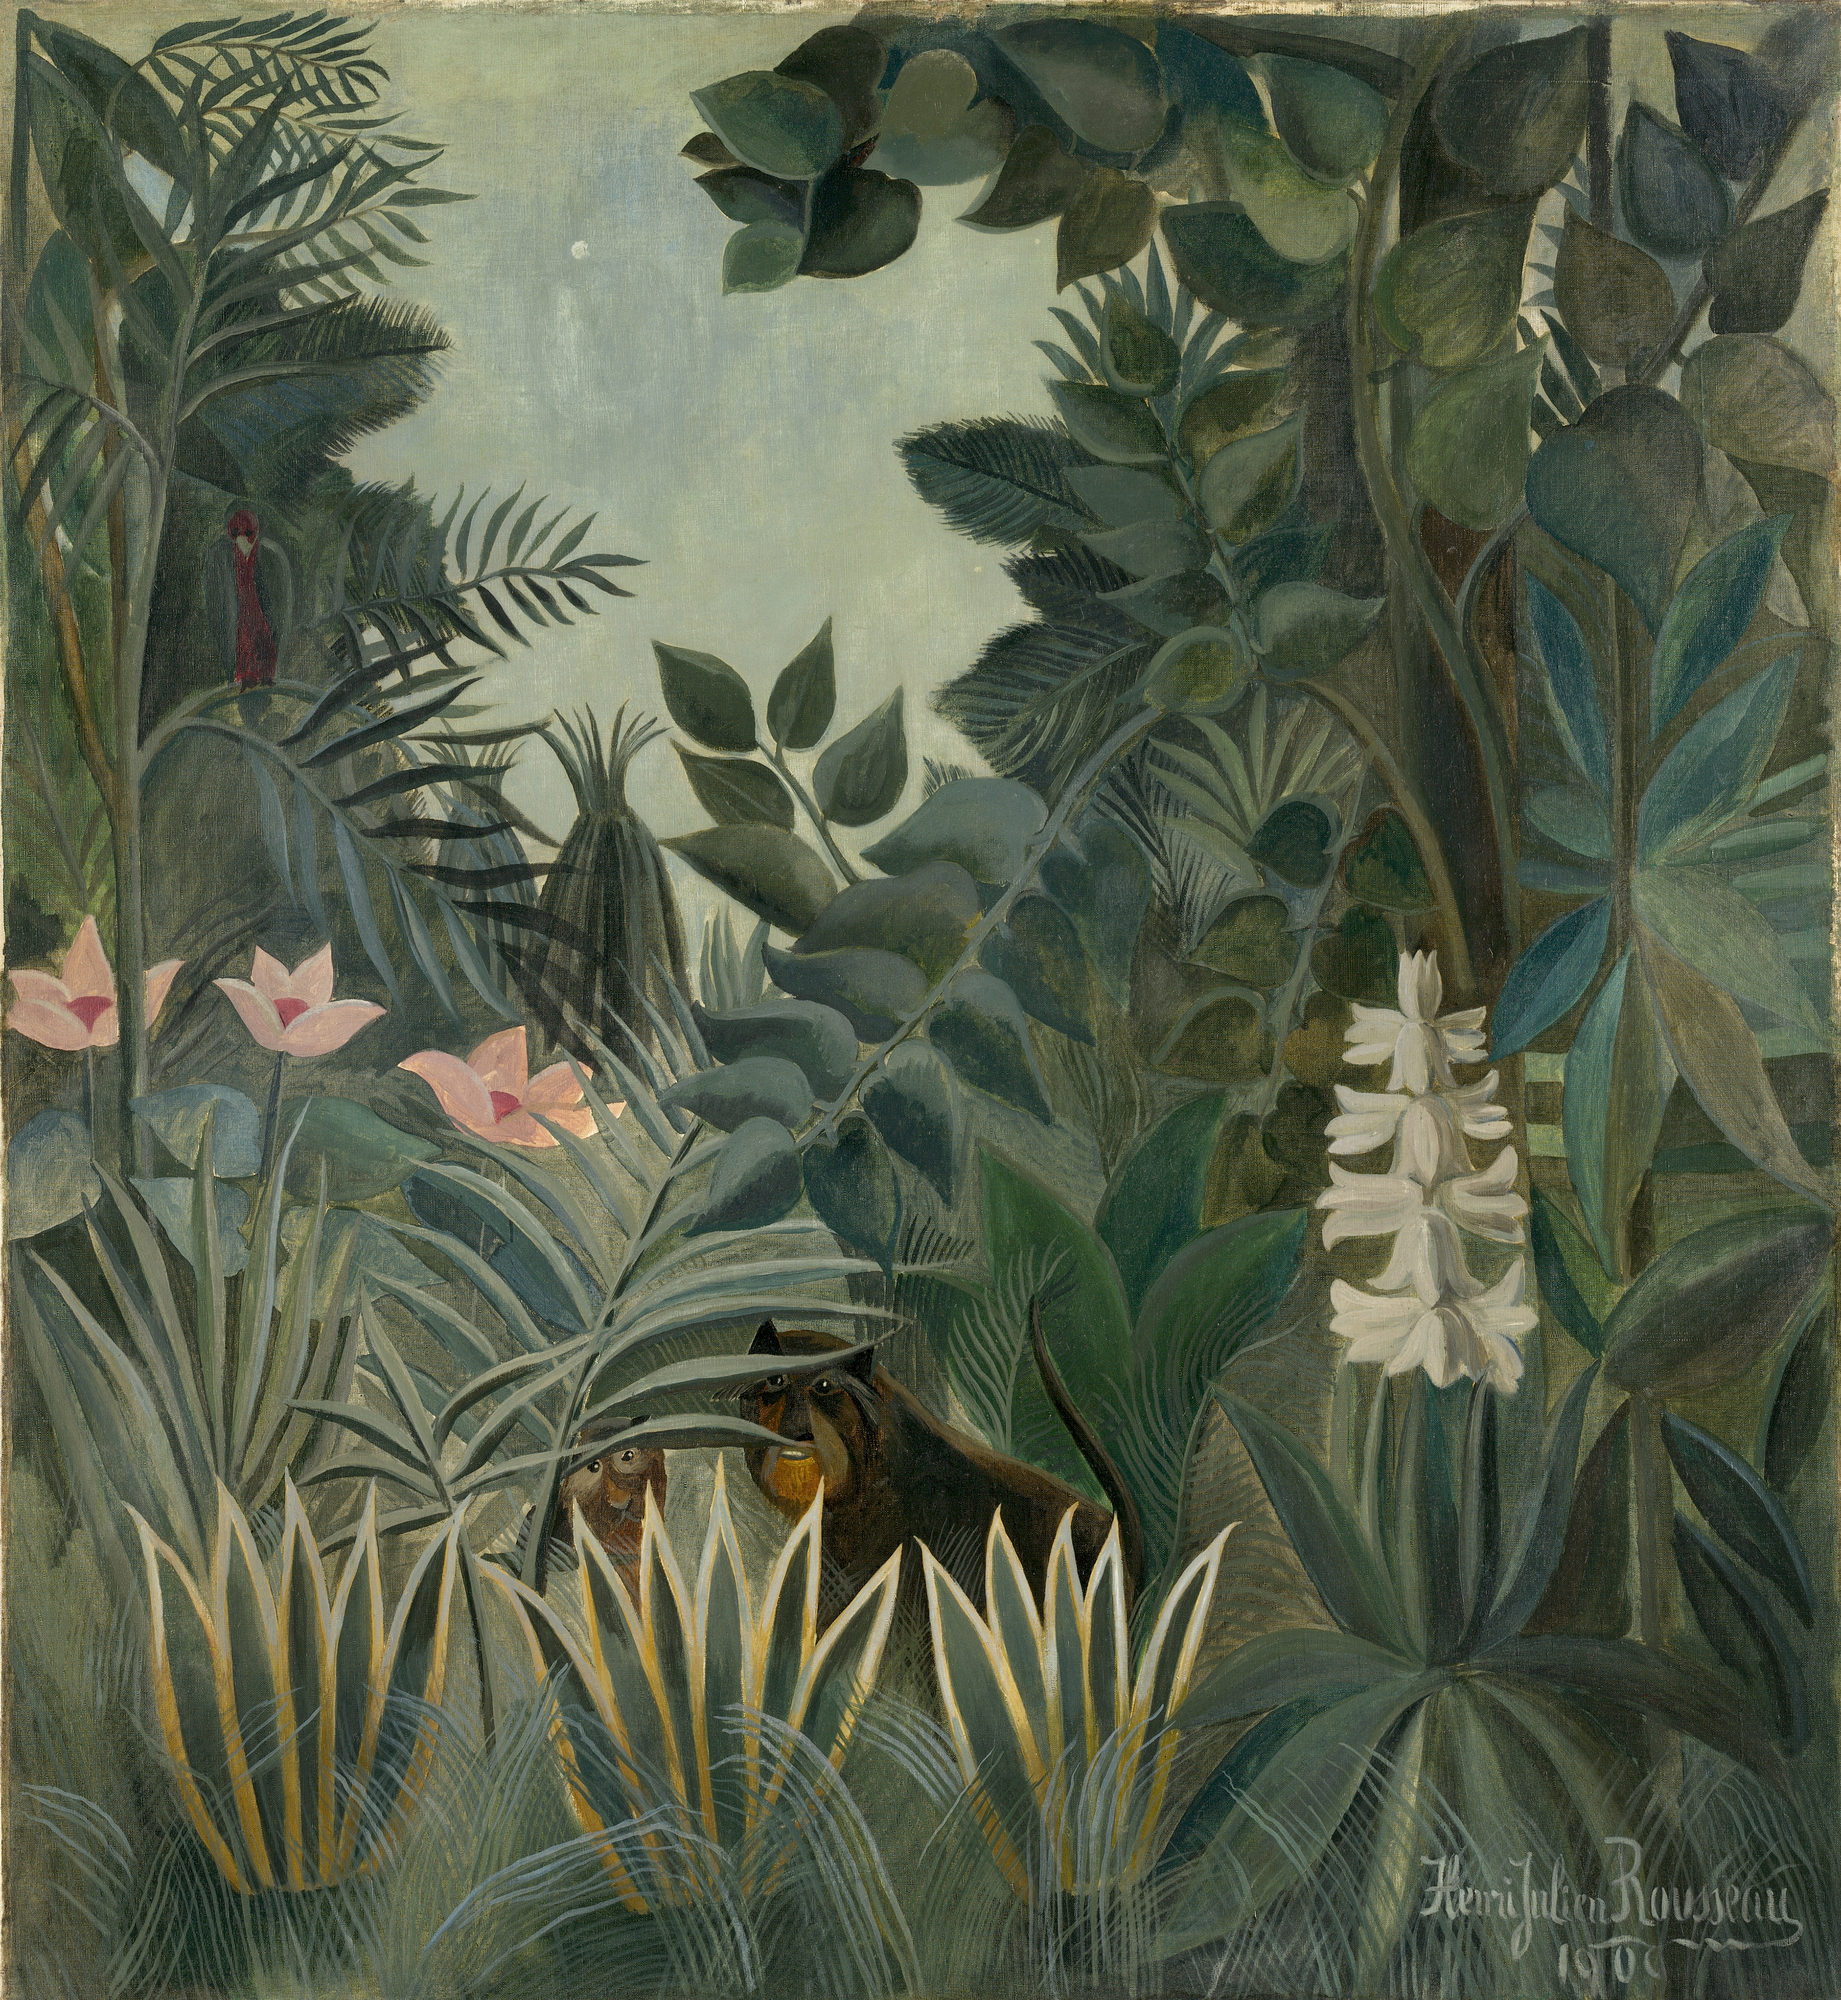 La giungla equatoriale by Henri Rousseau - 1909 - 140.6 x 129.5 cm 